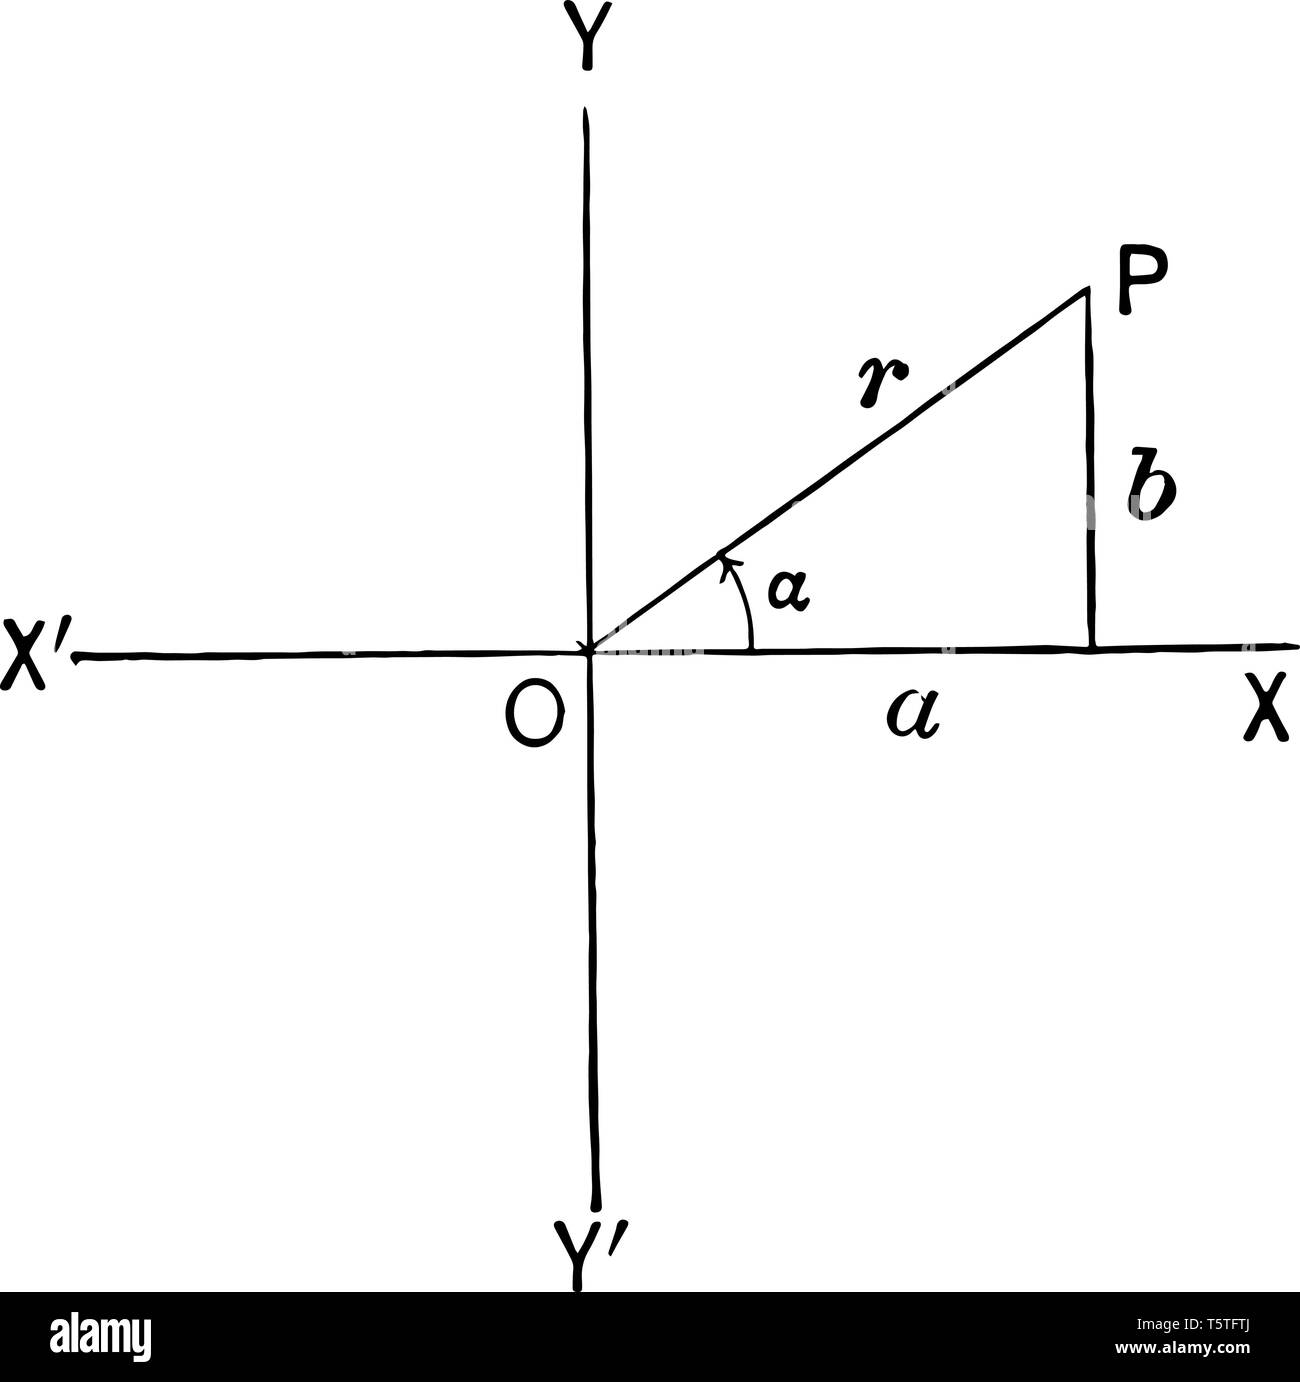 L'image montre le triangle dans le quadrant I. Il est tiré en traçant le point sur l'axe des x et l'axe y, vintage dessin ou gravure illustra Illustration de Vecteur